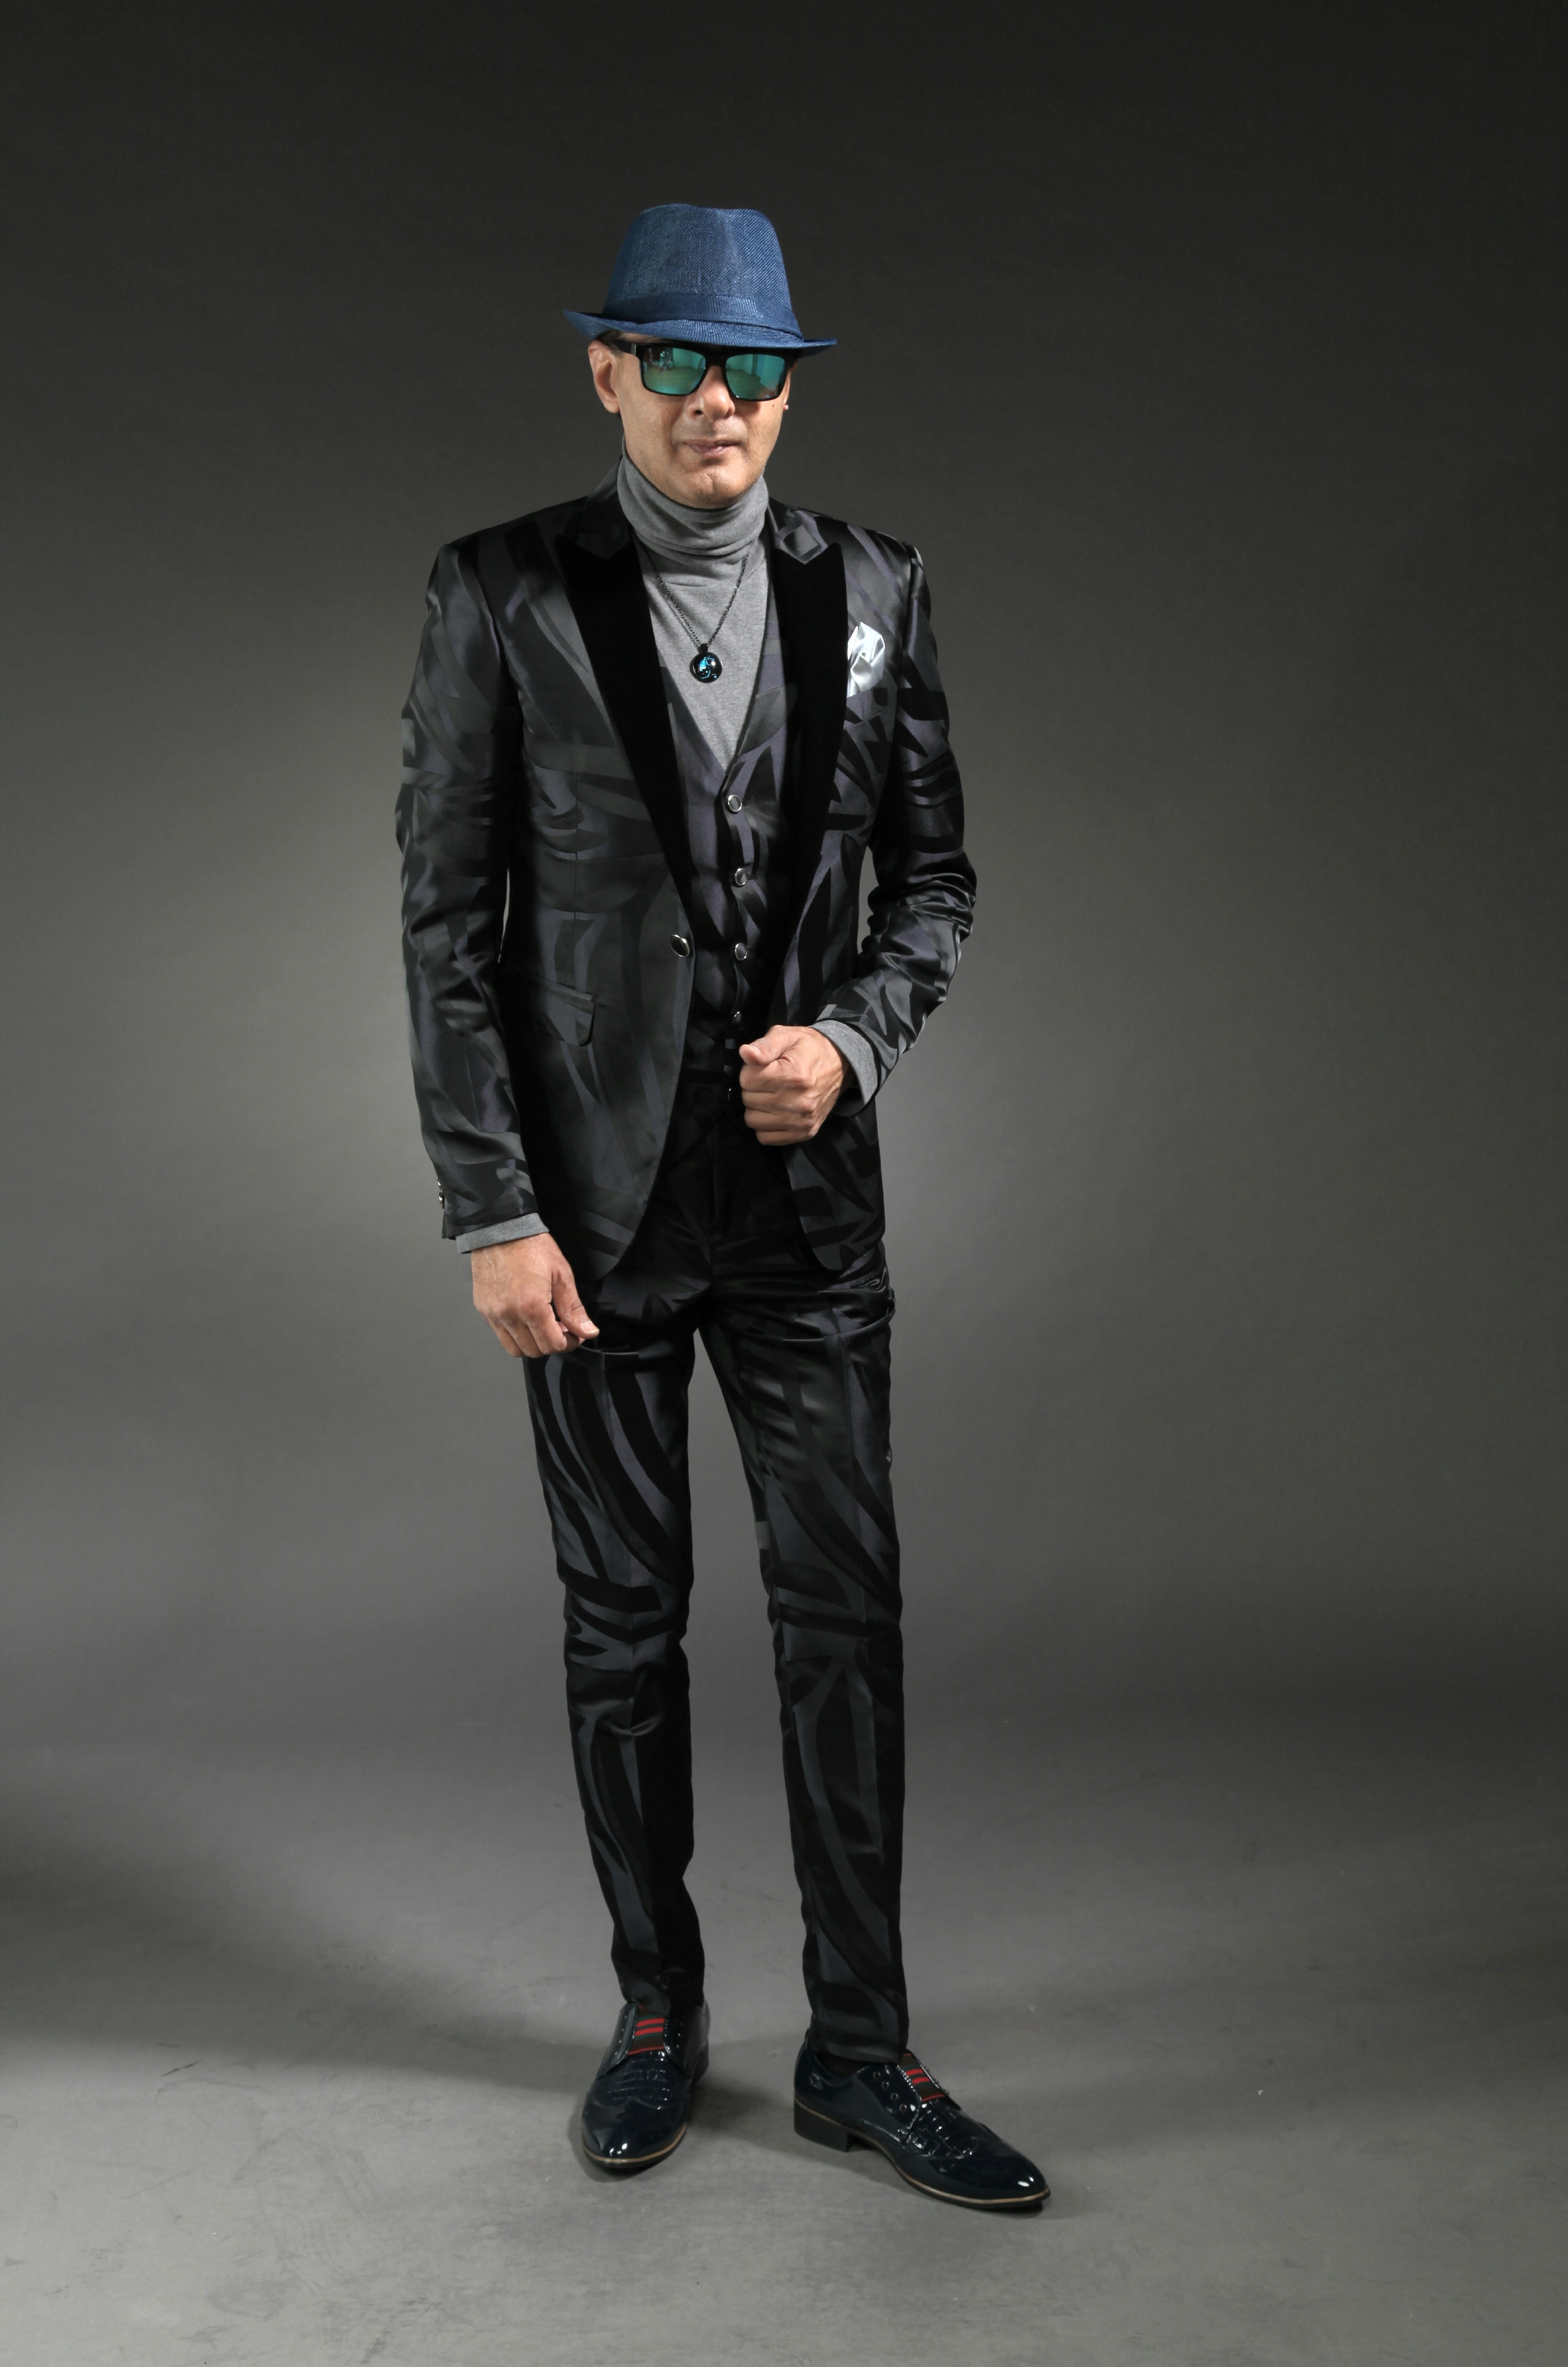 MST-5010-01-rent_rental_hire_tuxedo_suit_black_tie_suit_designer_suits_shop_tailor_tailors_singapore_wedding